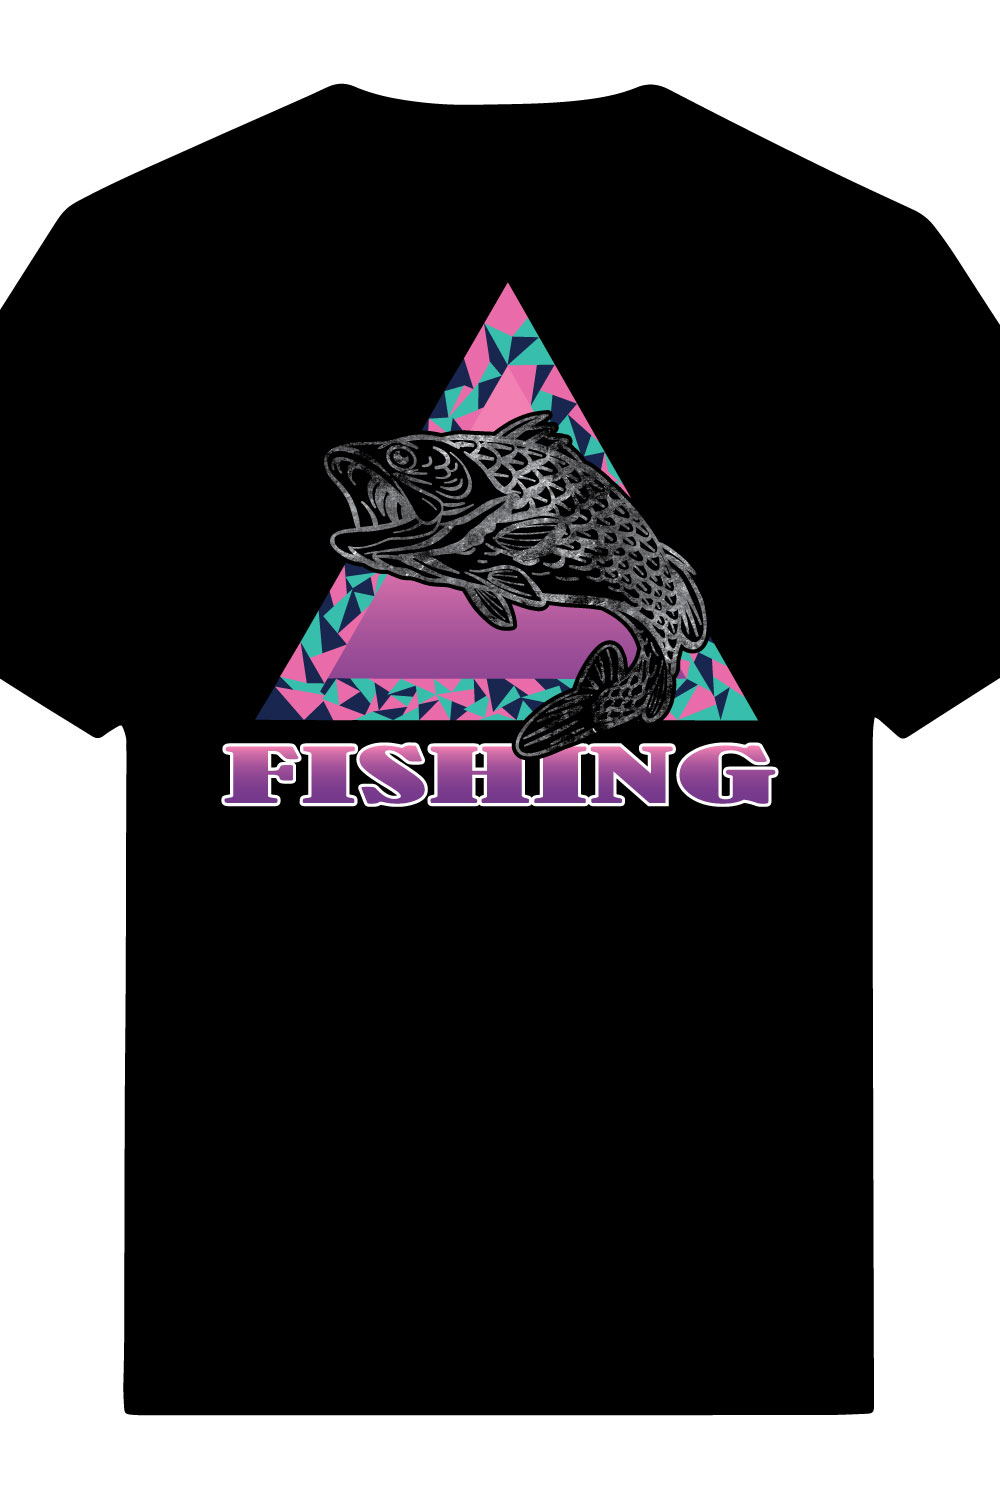 FISHING gradient color T-shirt design pinterest preview image.